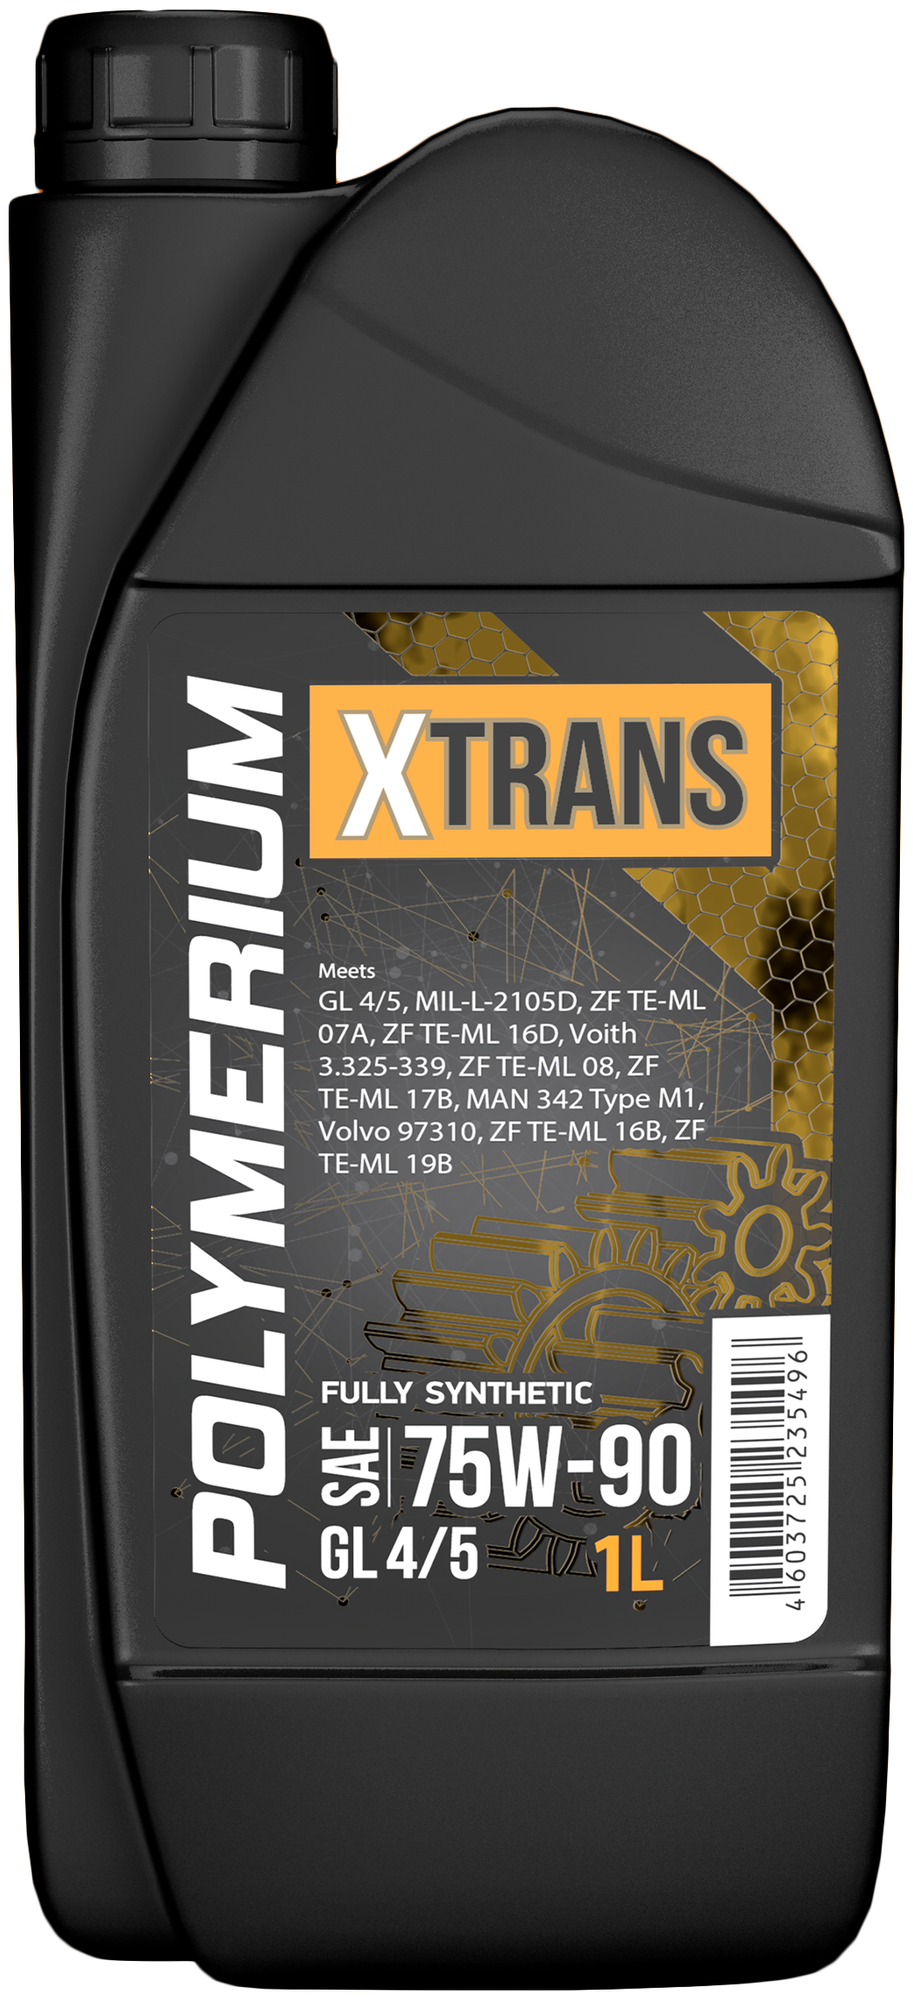 Cинтетическое трансмиссионное масло POLYMERIUM X-TRANS 75W-90 GL 4/5 Fully synthetic 1 литр